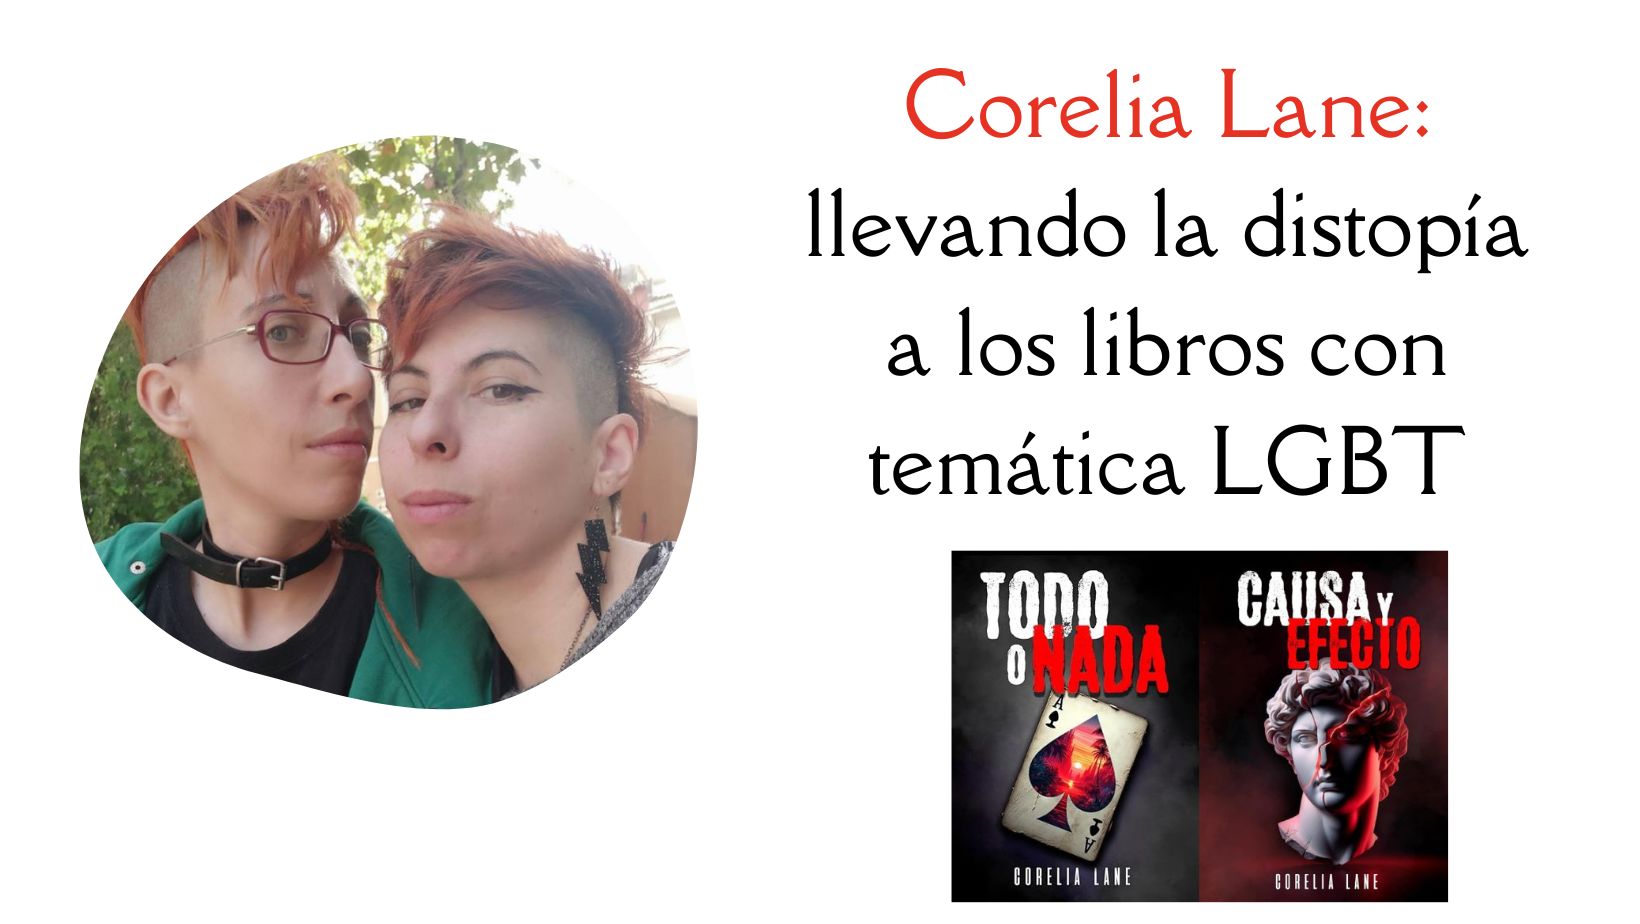 Corelia Lane: llevando la distopía a los libros con temática LGBT